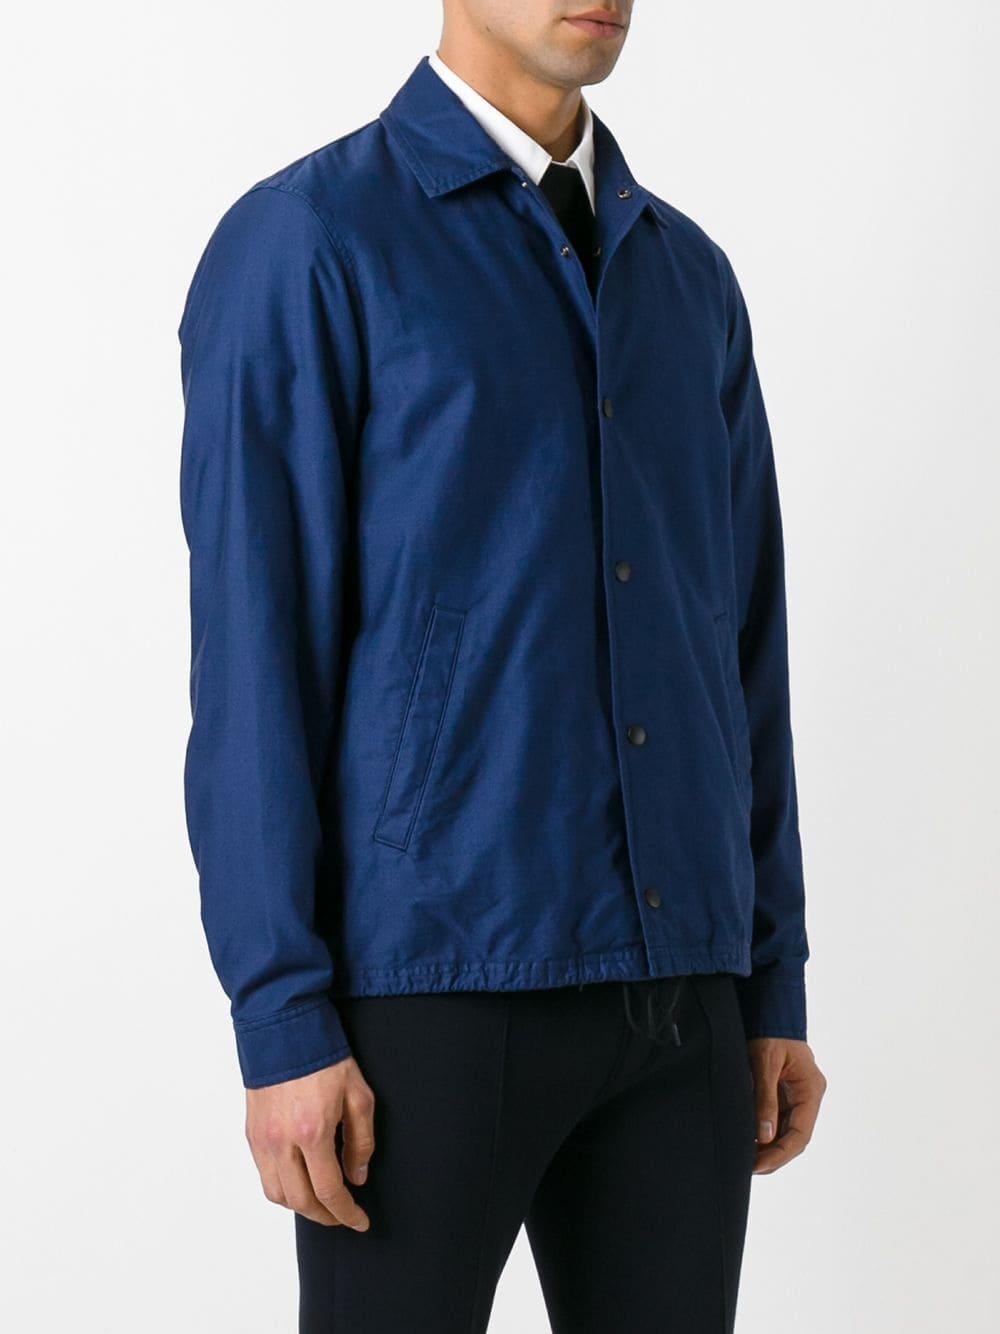 Comme des Garçons Cotton Button-up Jacket in Blue for Men - Lyst